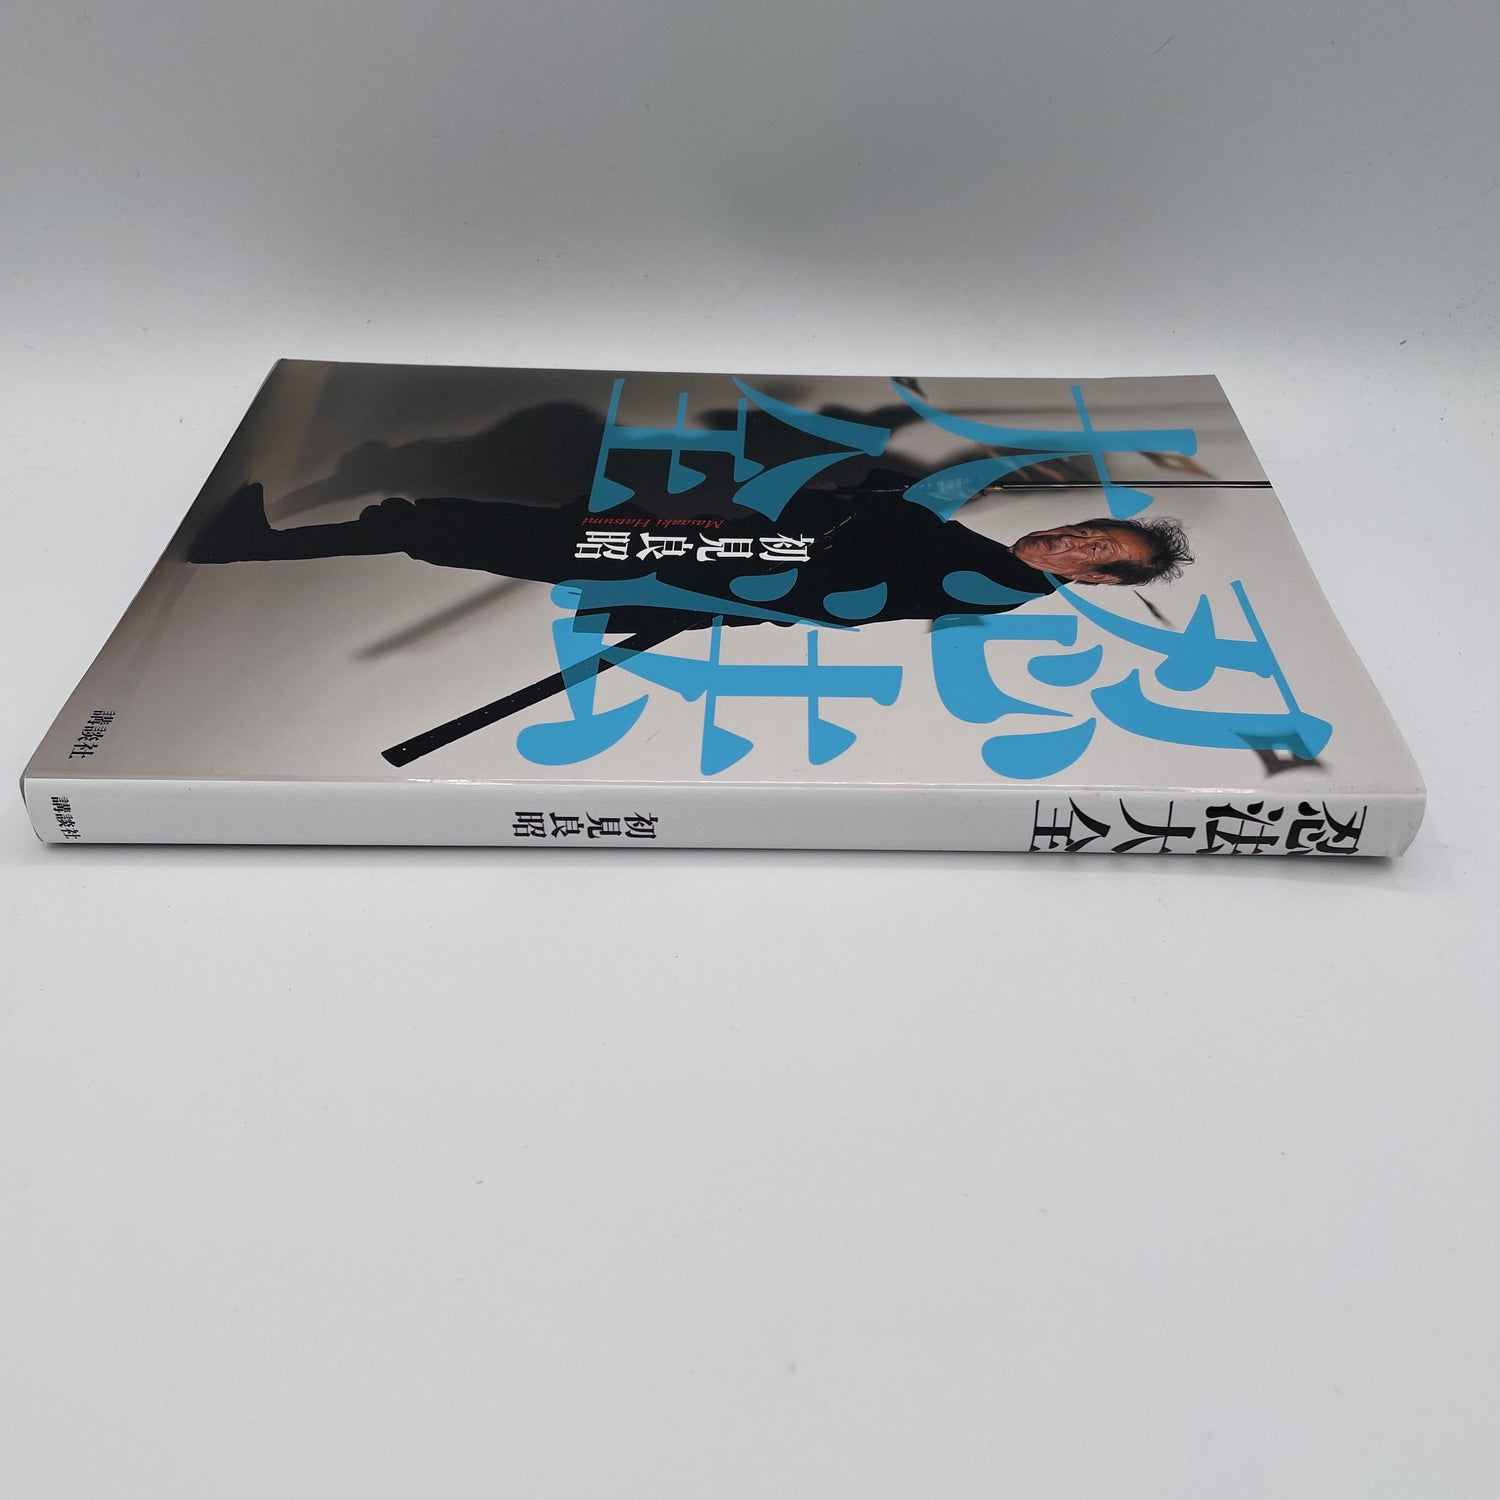 Ninja Encyclopedia Book by Masaaki Hatsumi